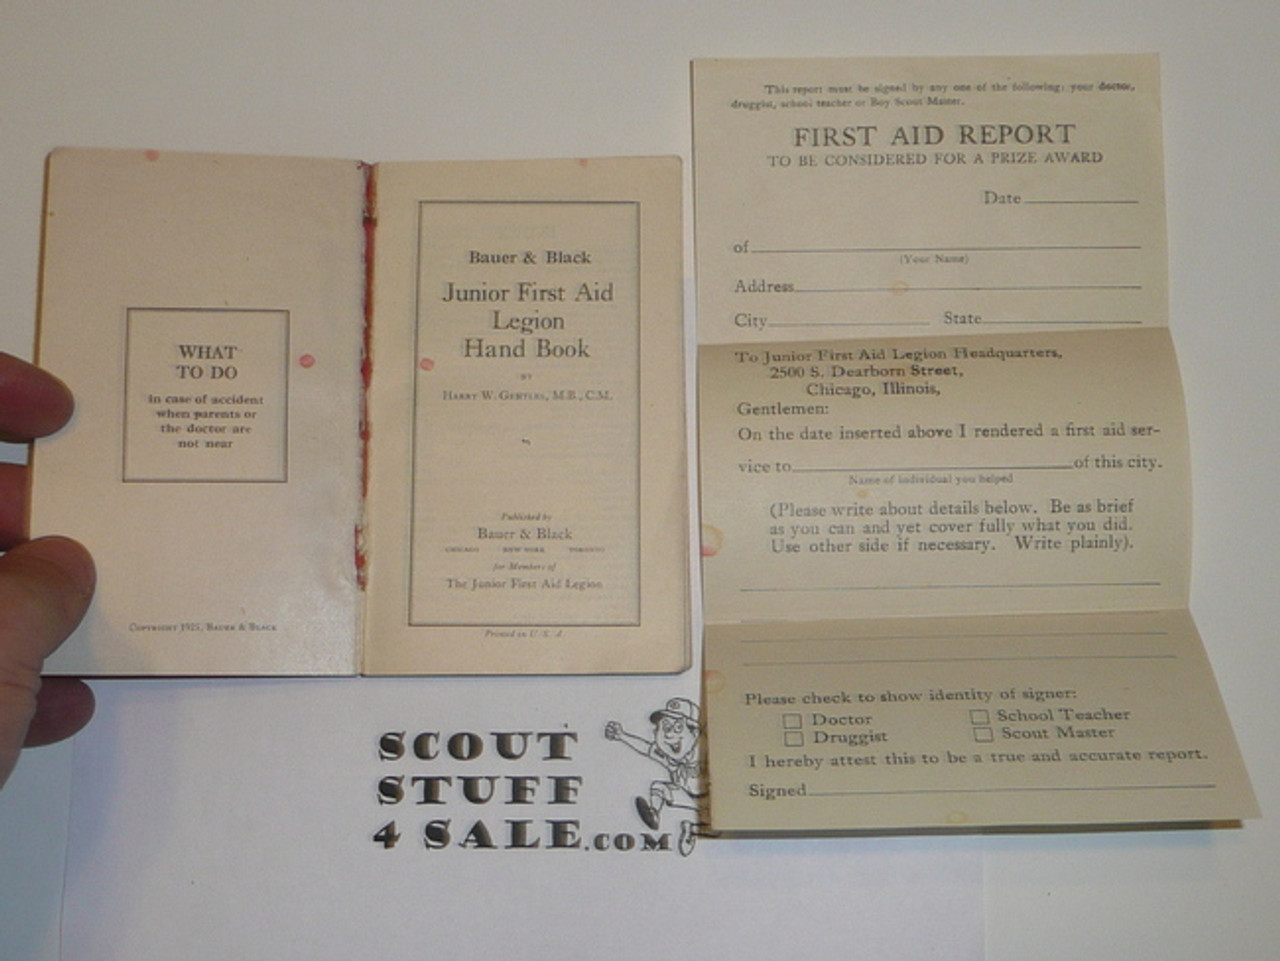 1925 Bauer and Black Junior First Aid Legion Handbook